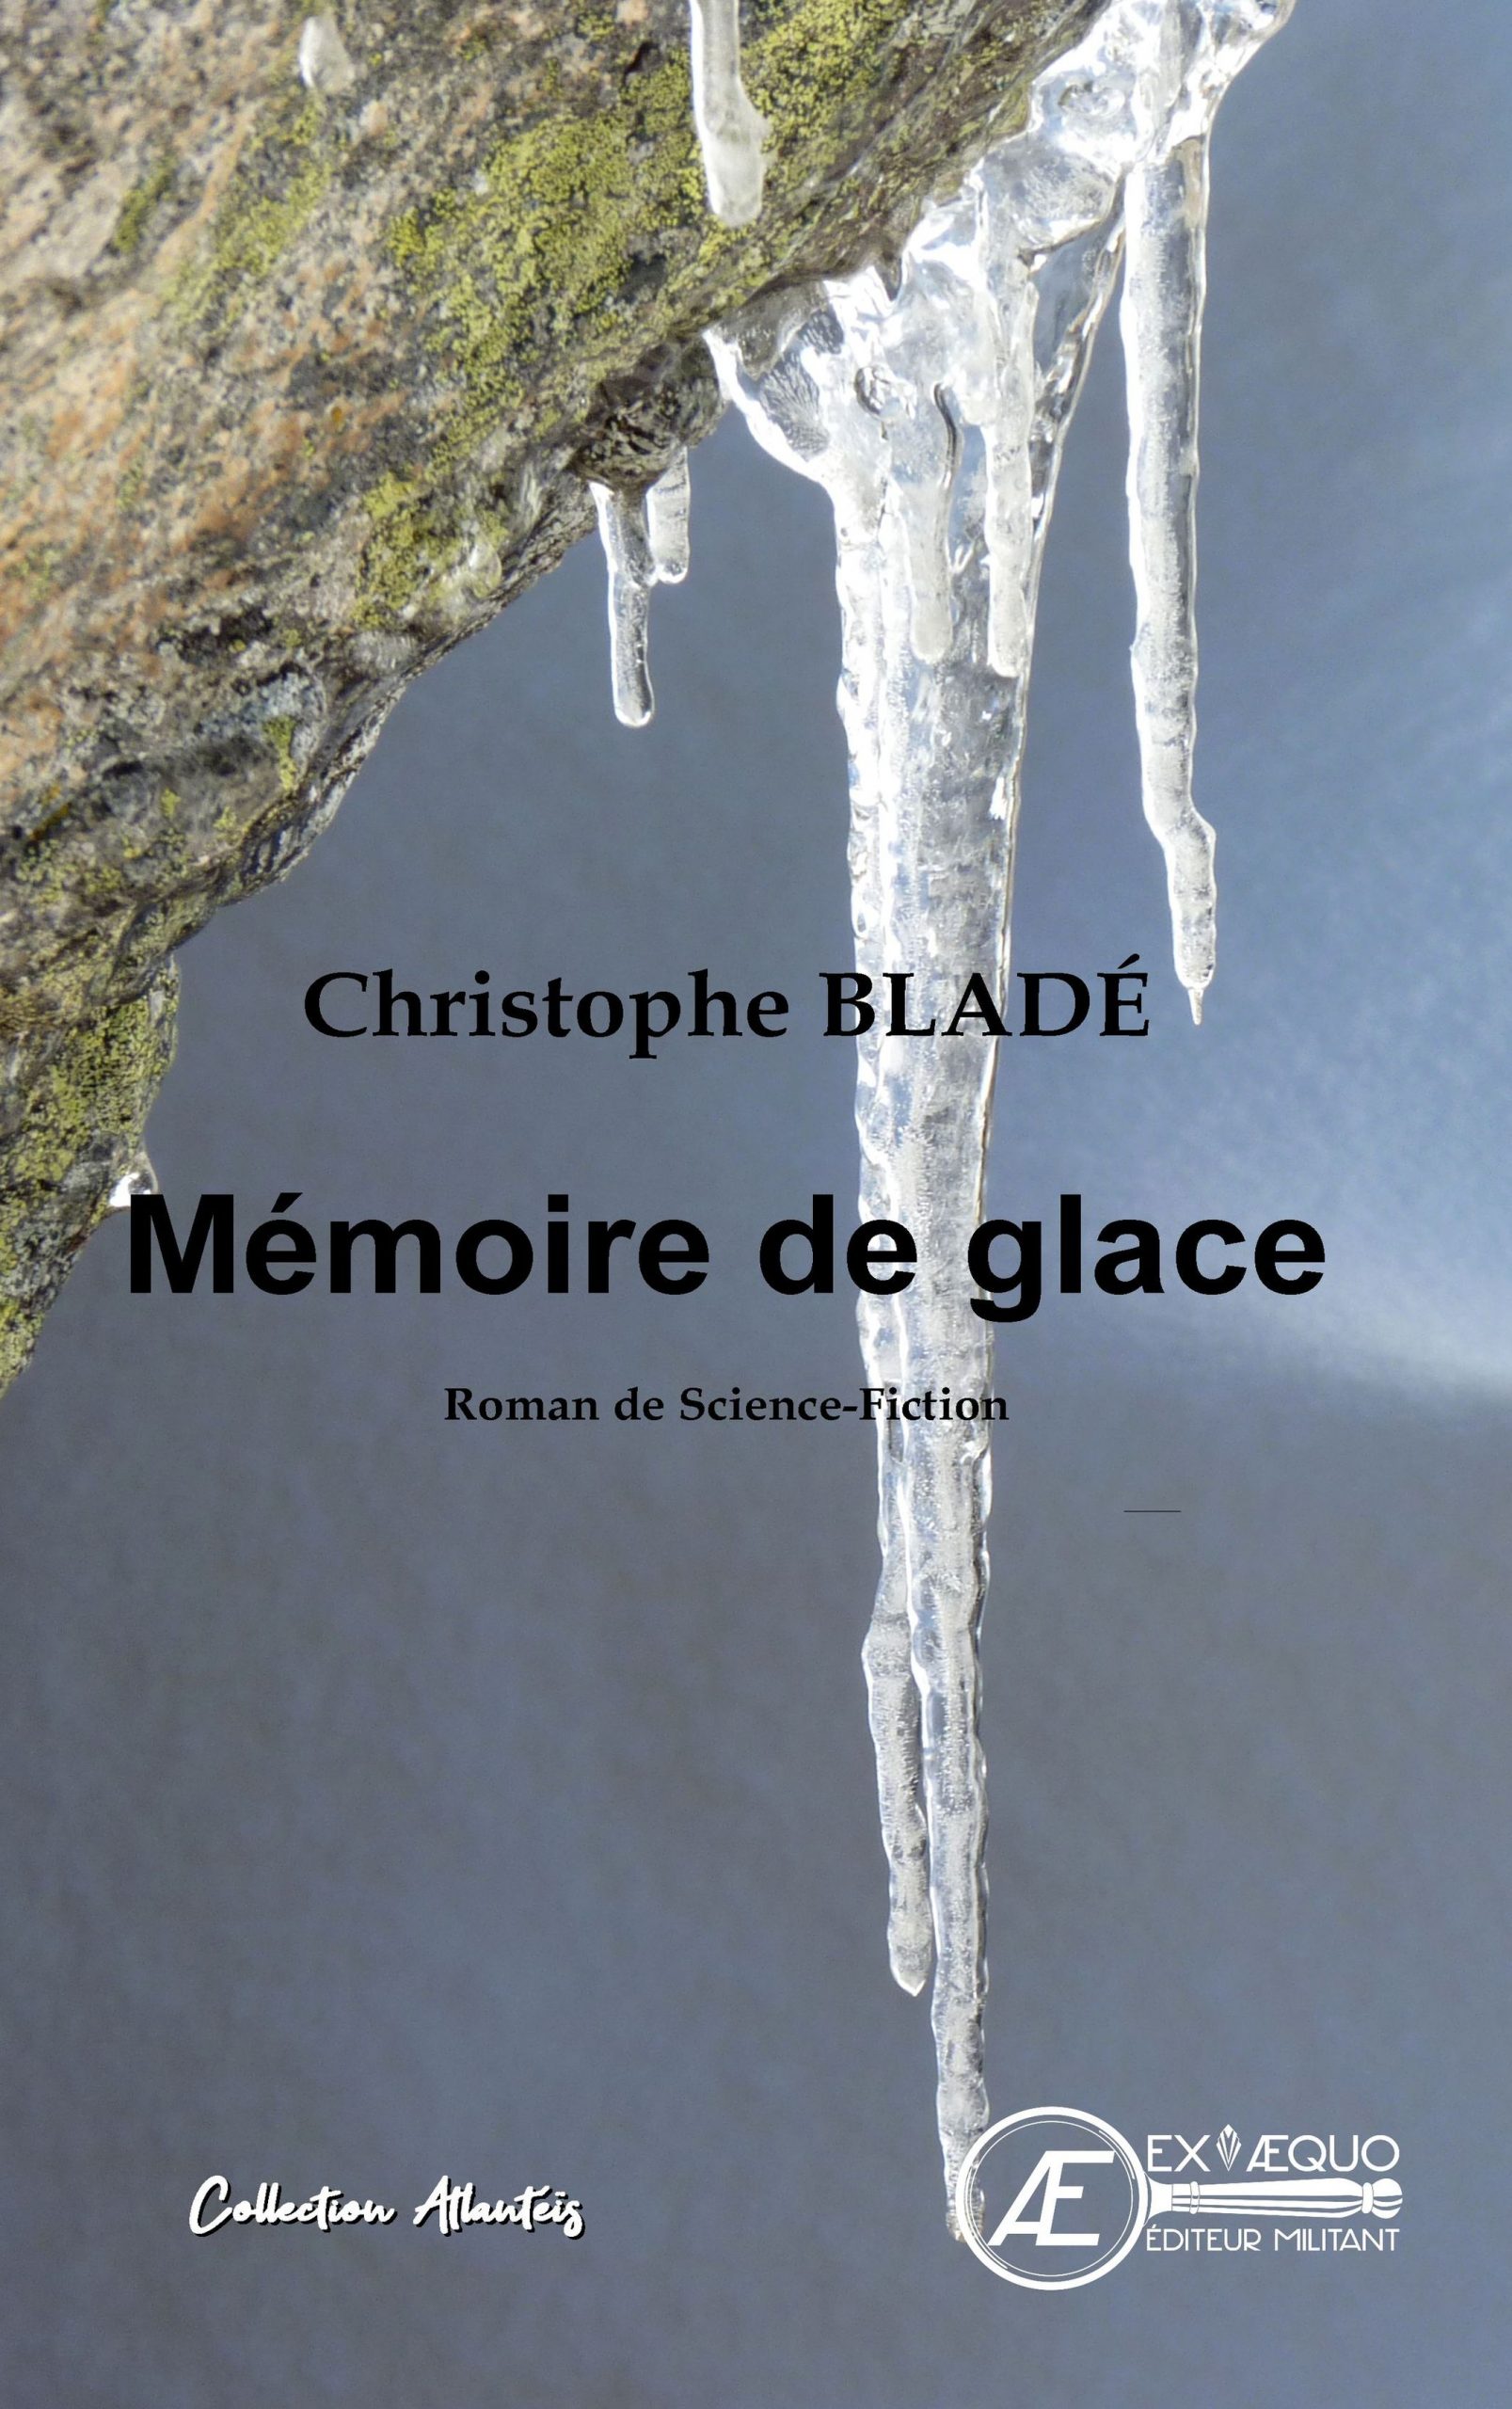 You are currently viewing Mémoire de glace, de Christophe Bladé